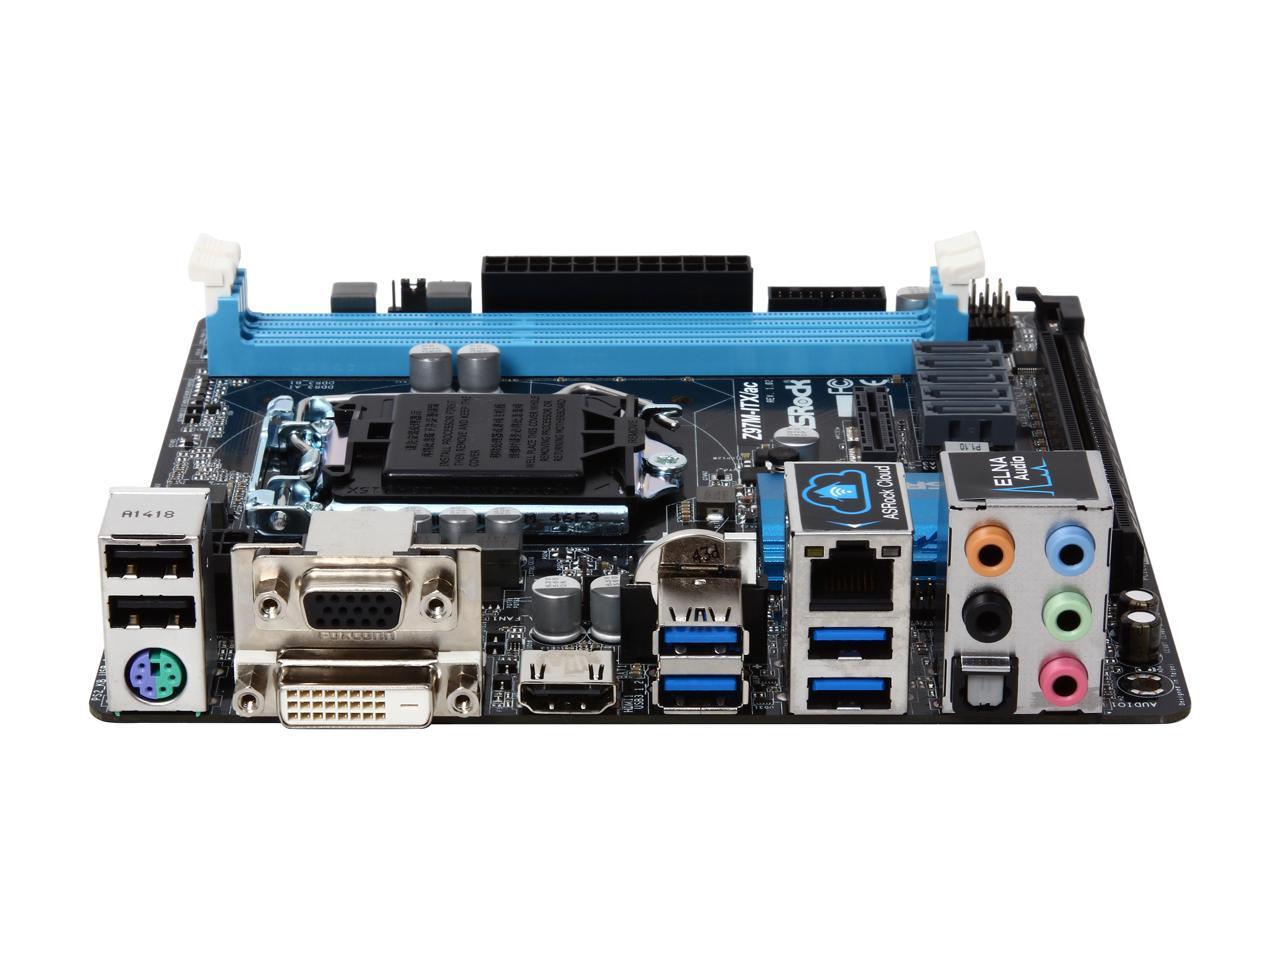 ASRock Z97M-ITX/AC LGA 1150 Mini ITX Intel Motherboard - Newegg.com